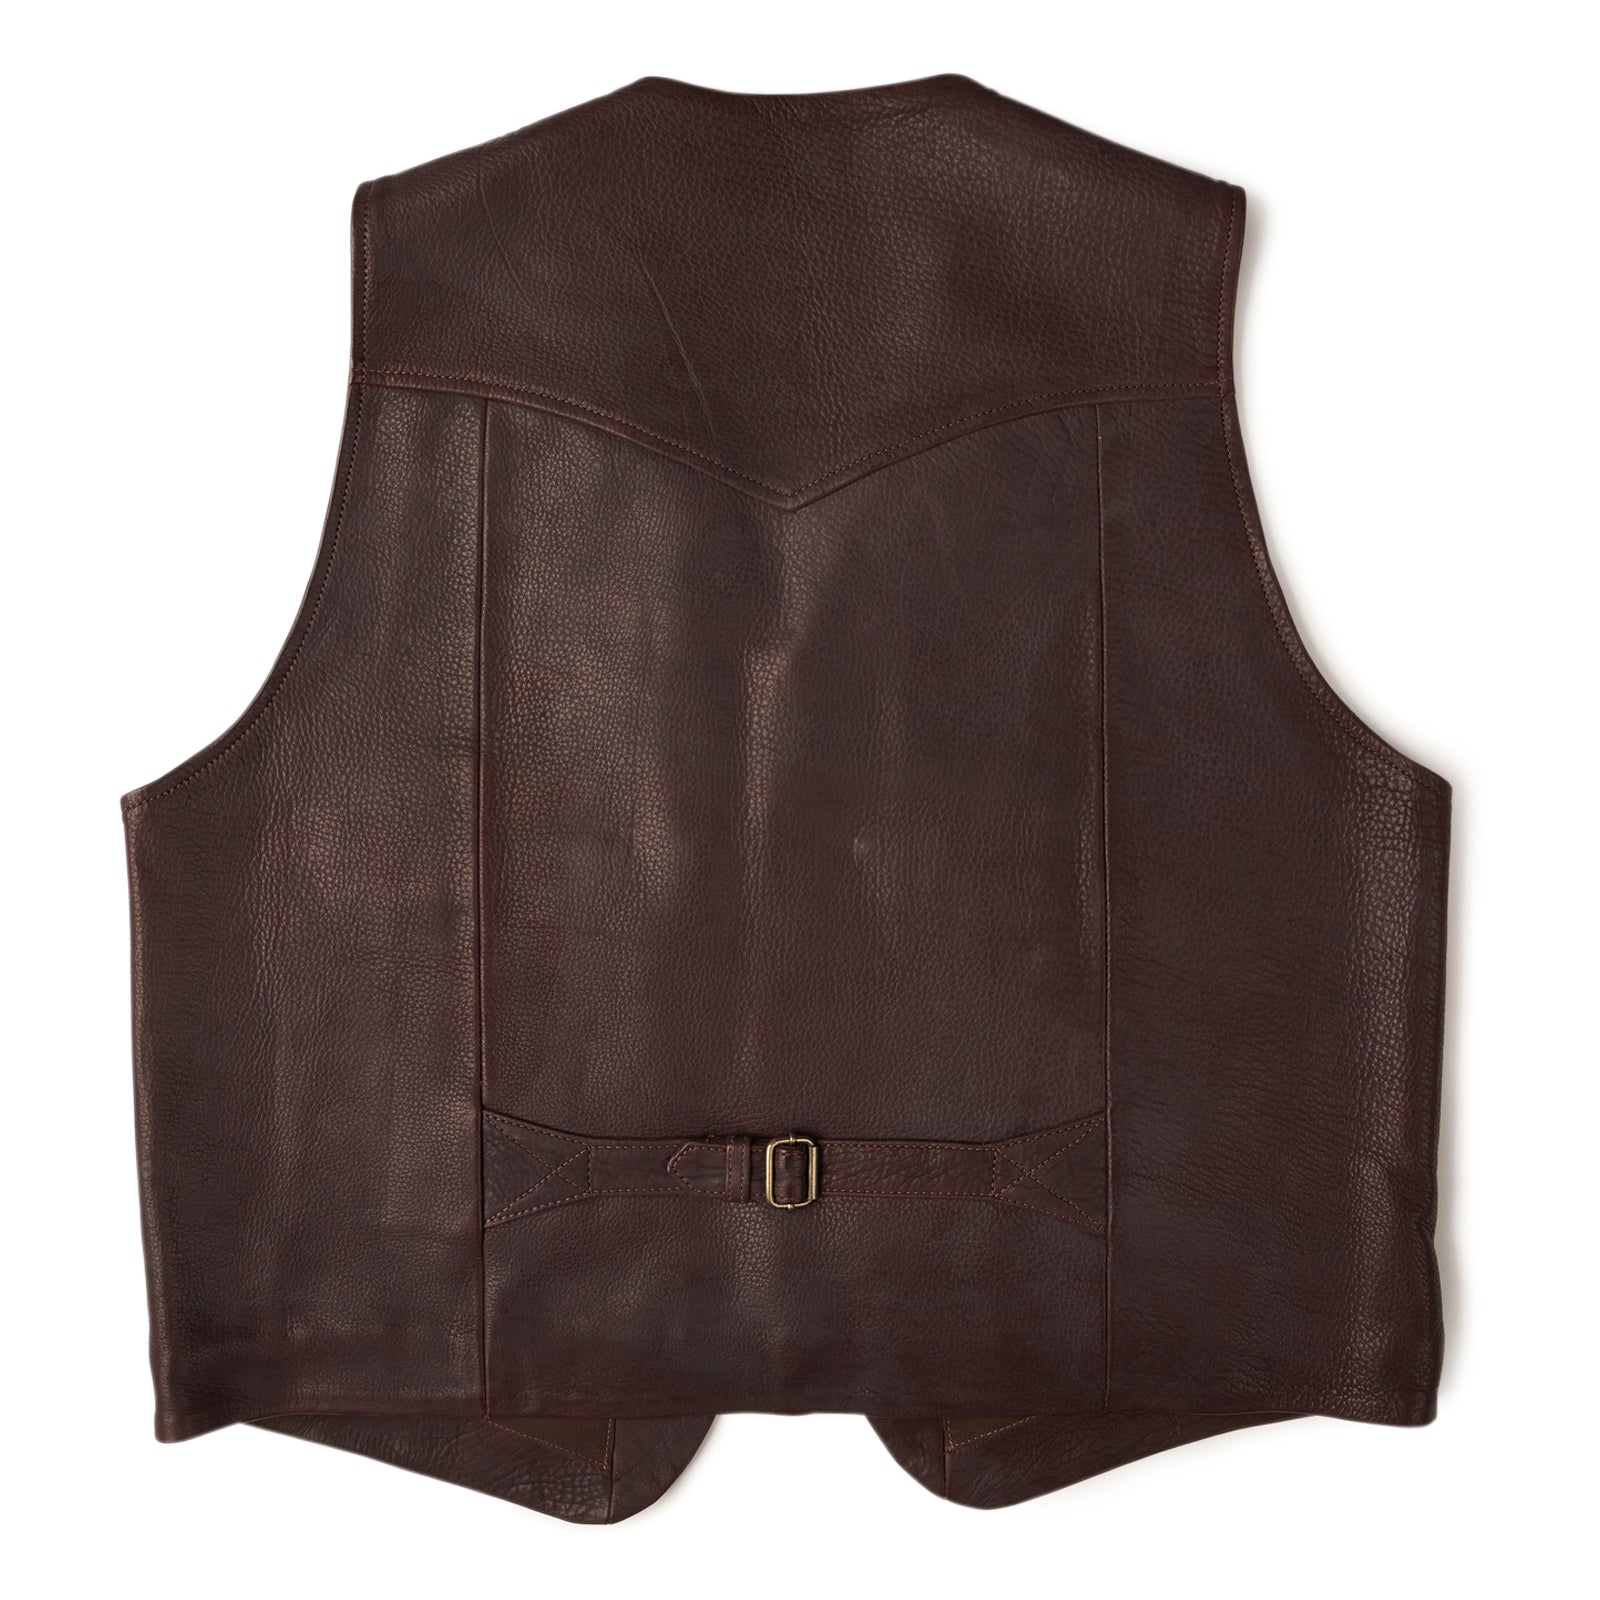 Original Rider Vest No. 4319 — Coronado Leather